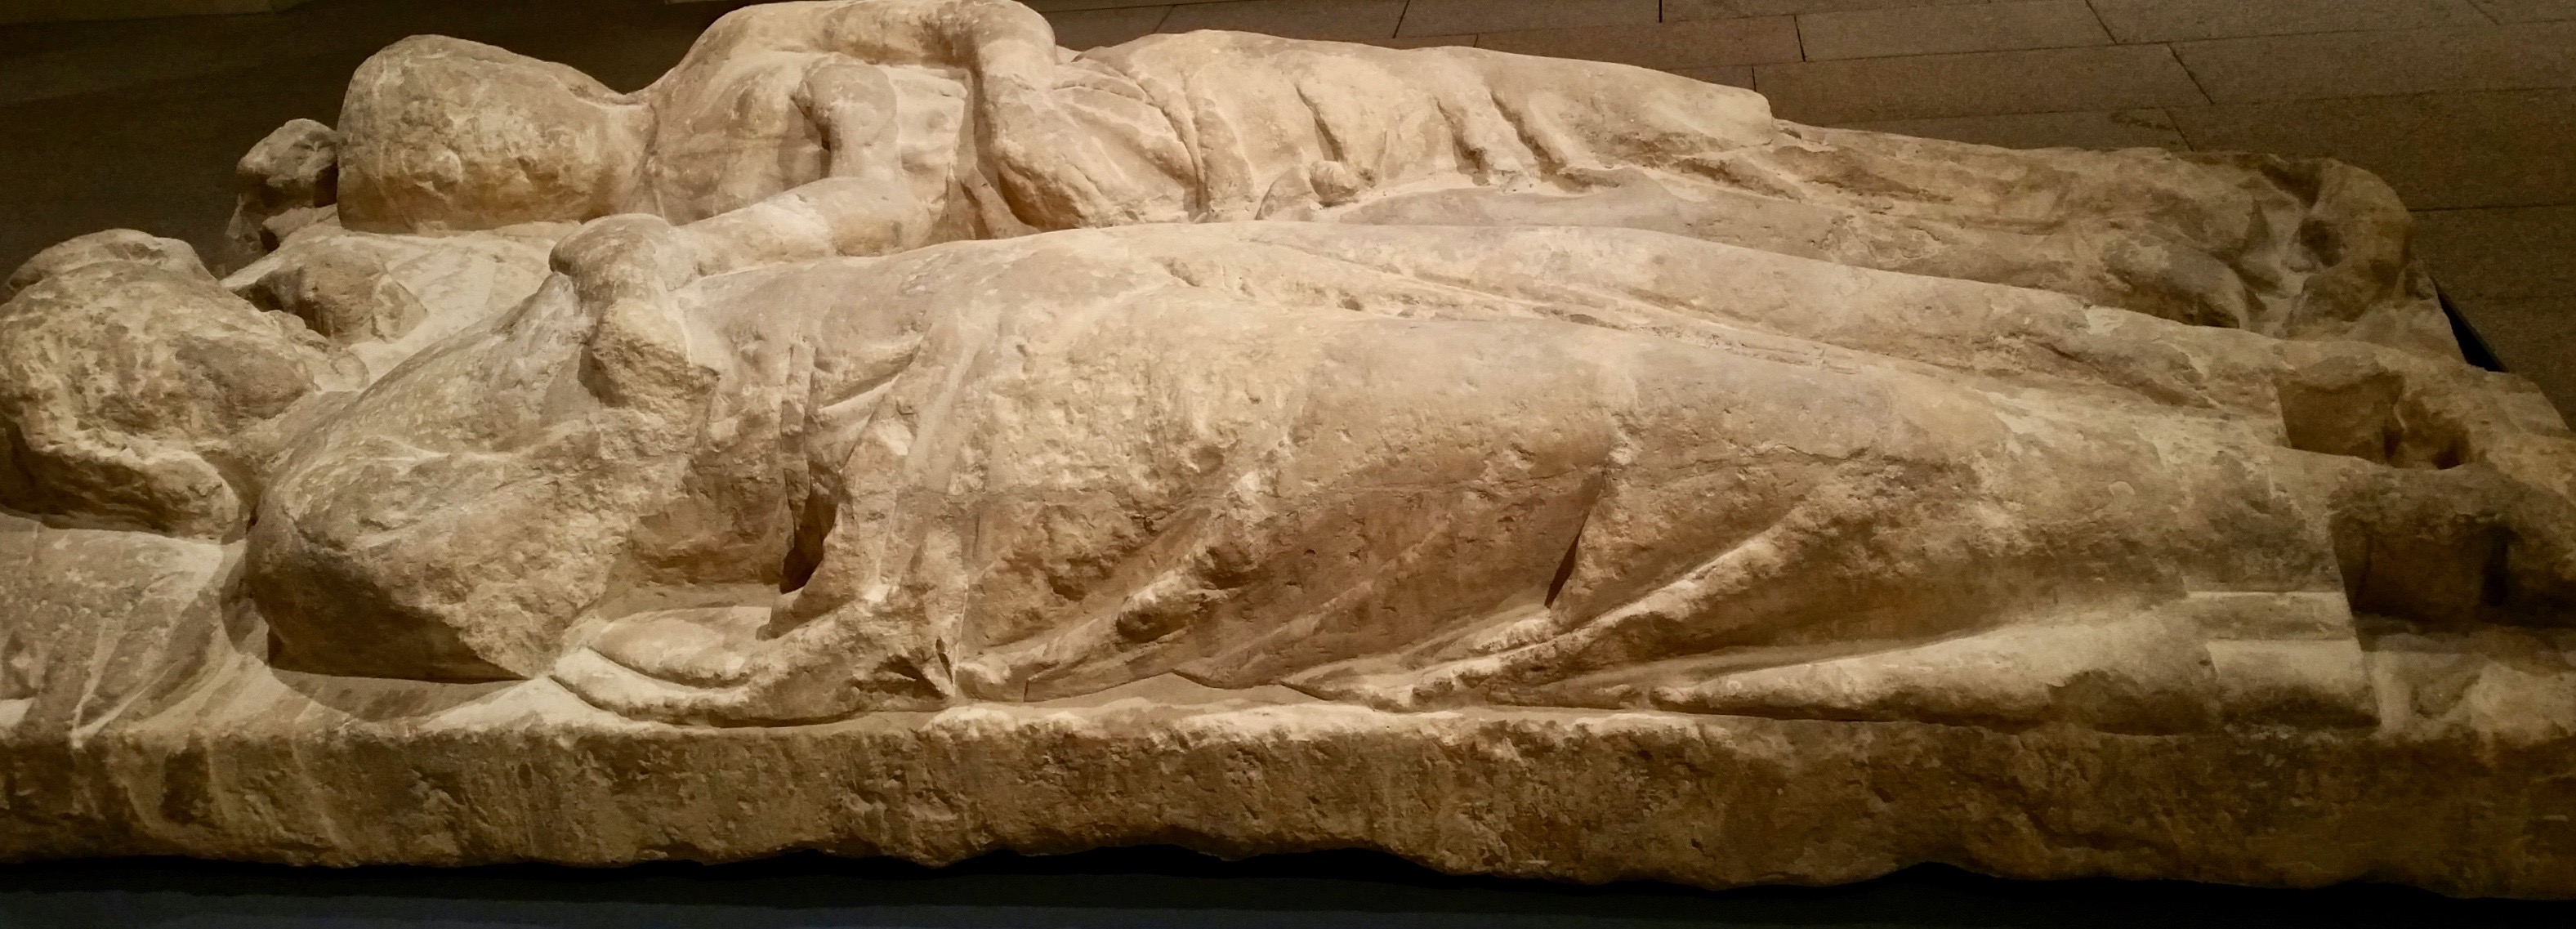 Le gisant dit du " Bon mariage ", musée de Limoges